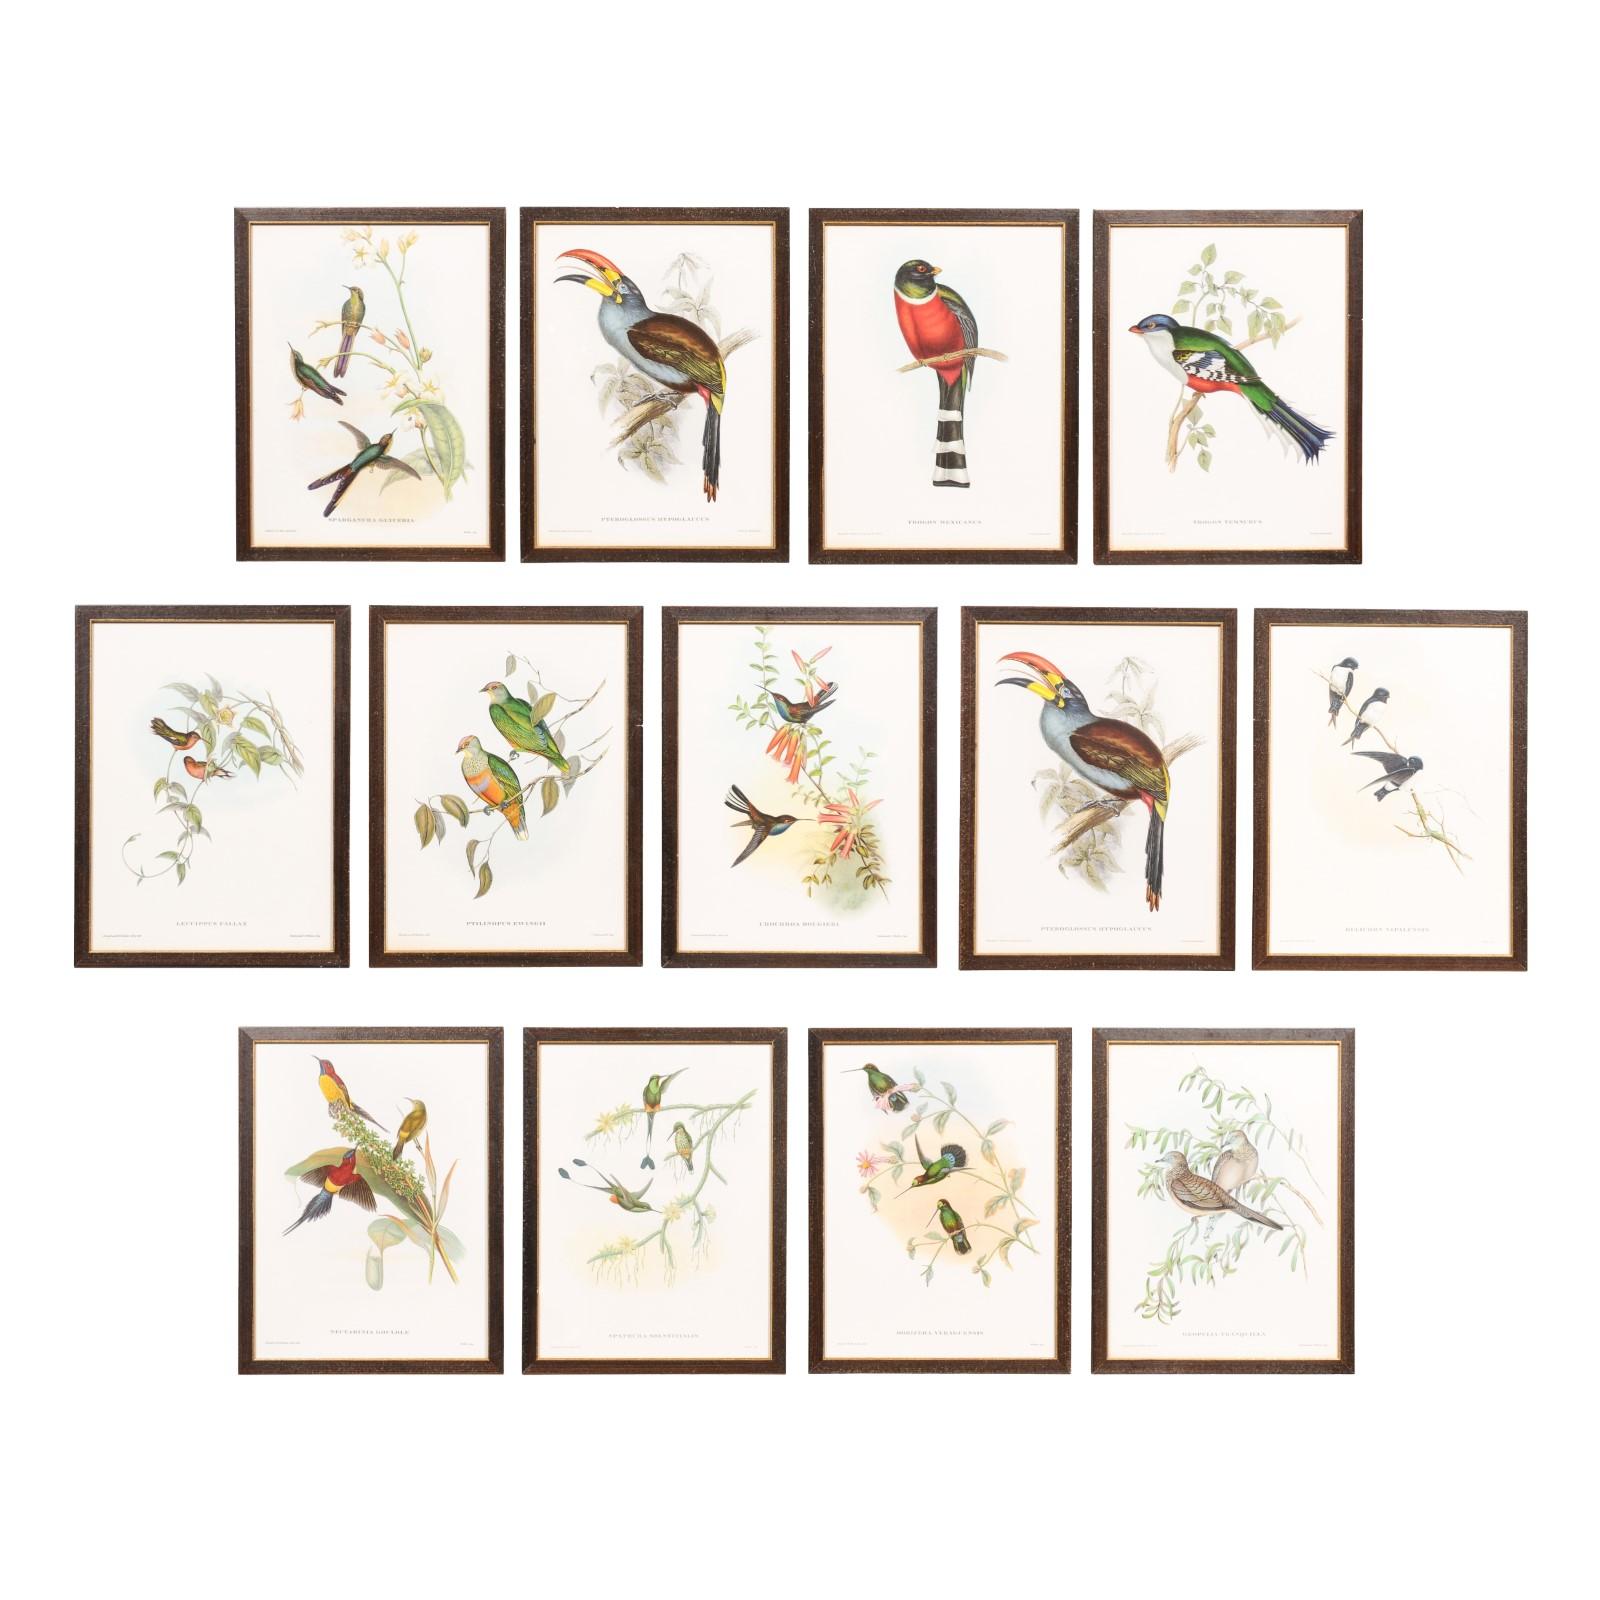 Diese Sammlung gerahmter tropischer Vogeldrucke von John Gould aus seiner auf 1000 Exemplare limitierten Auflage zeigt das bemerkenswerte Talent des britischen Ornithologen aus dem 19. Jahrhundert. Wir haben das Privileg, 13 dieser Drucke zu